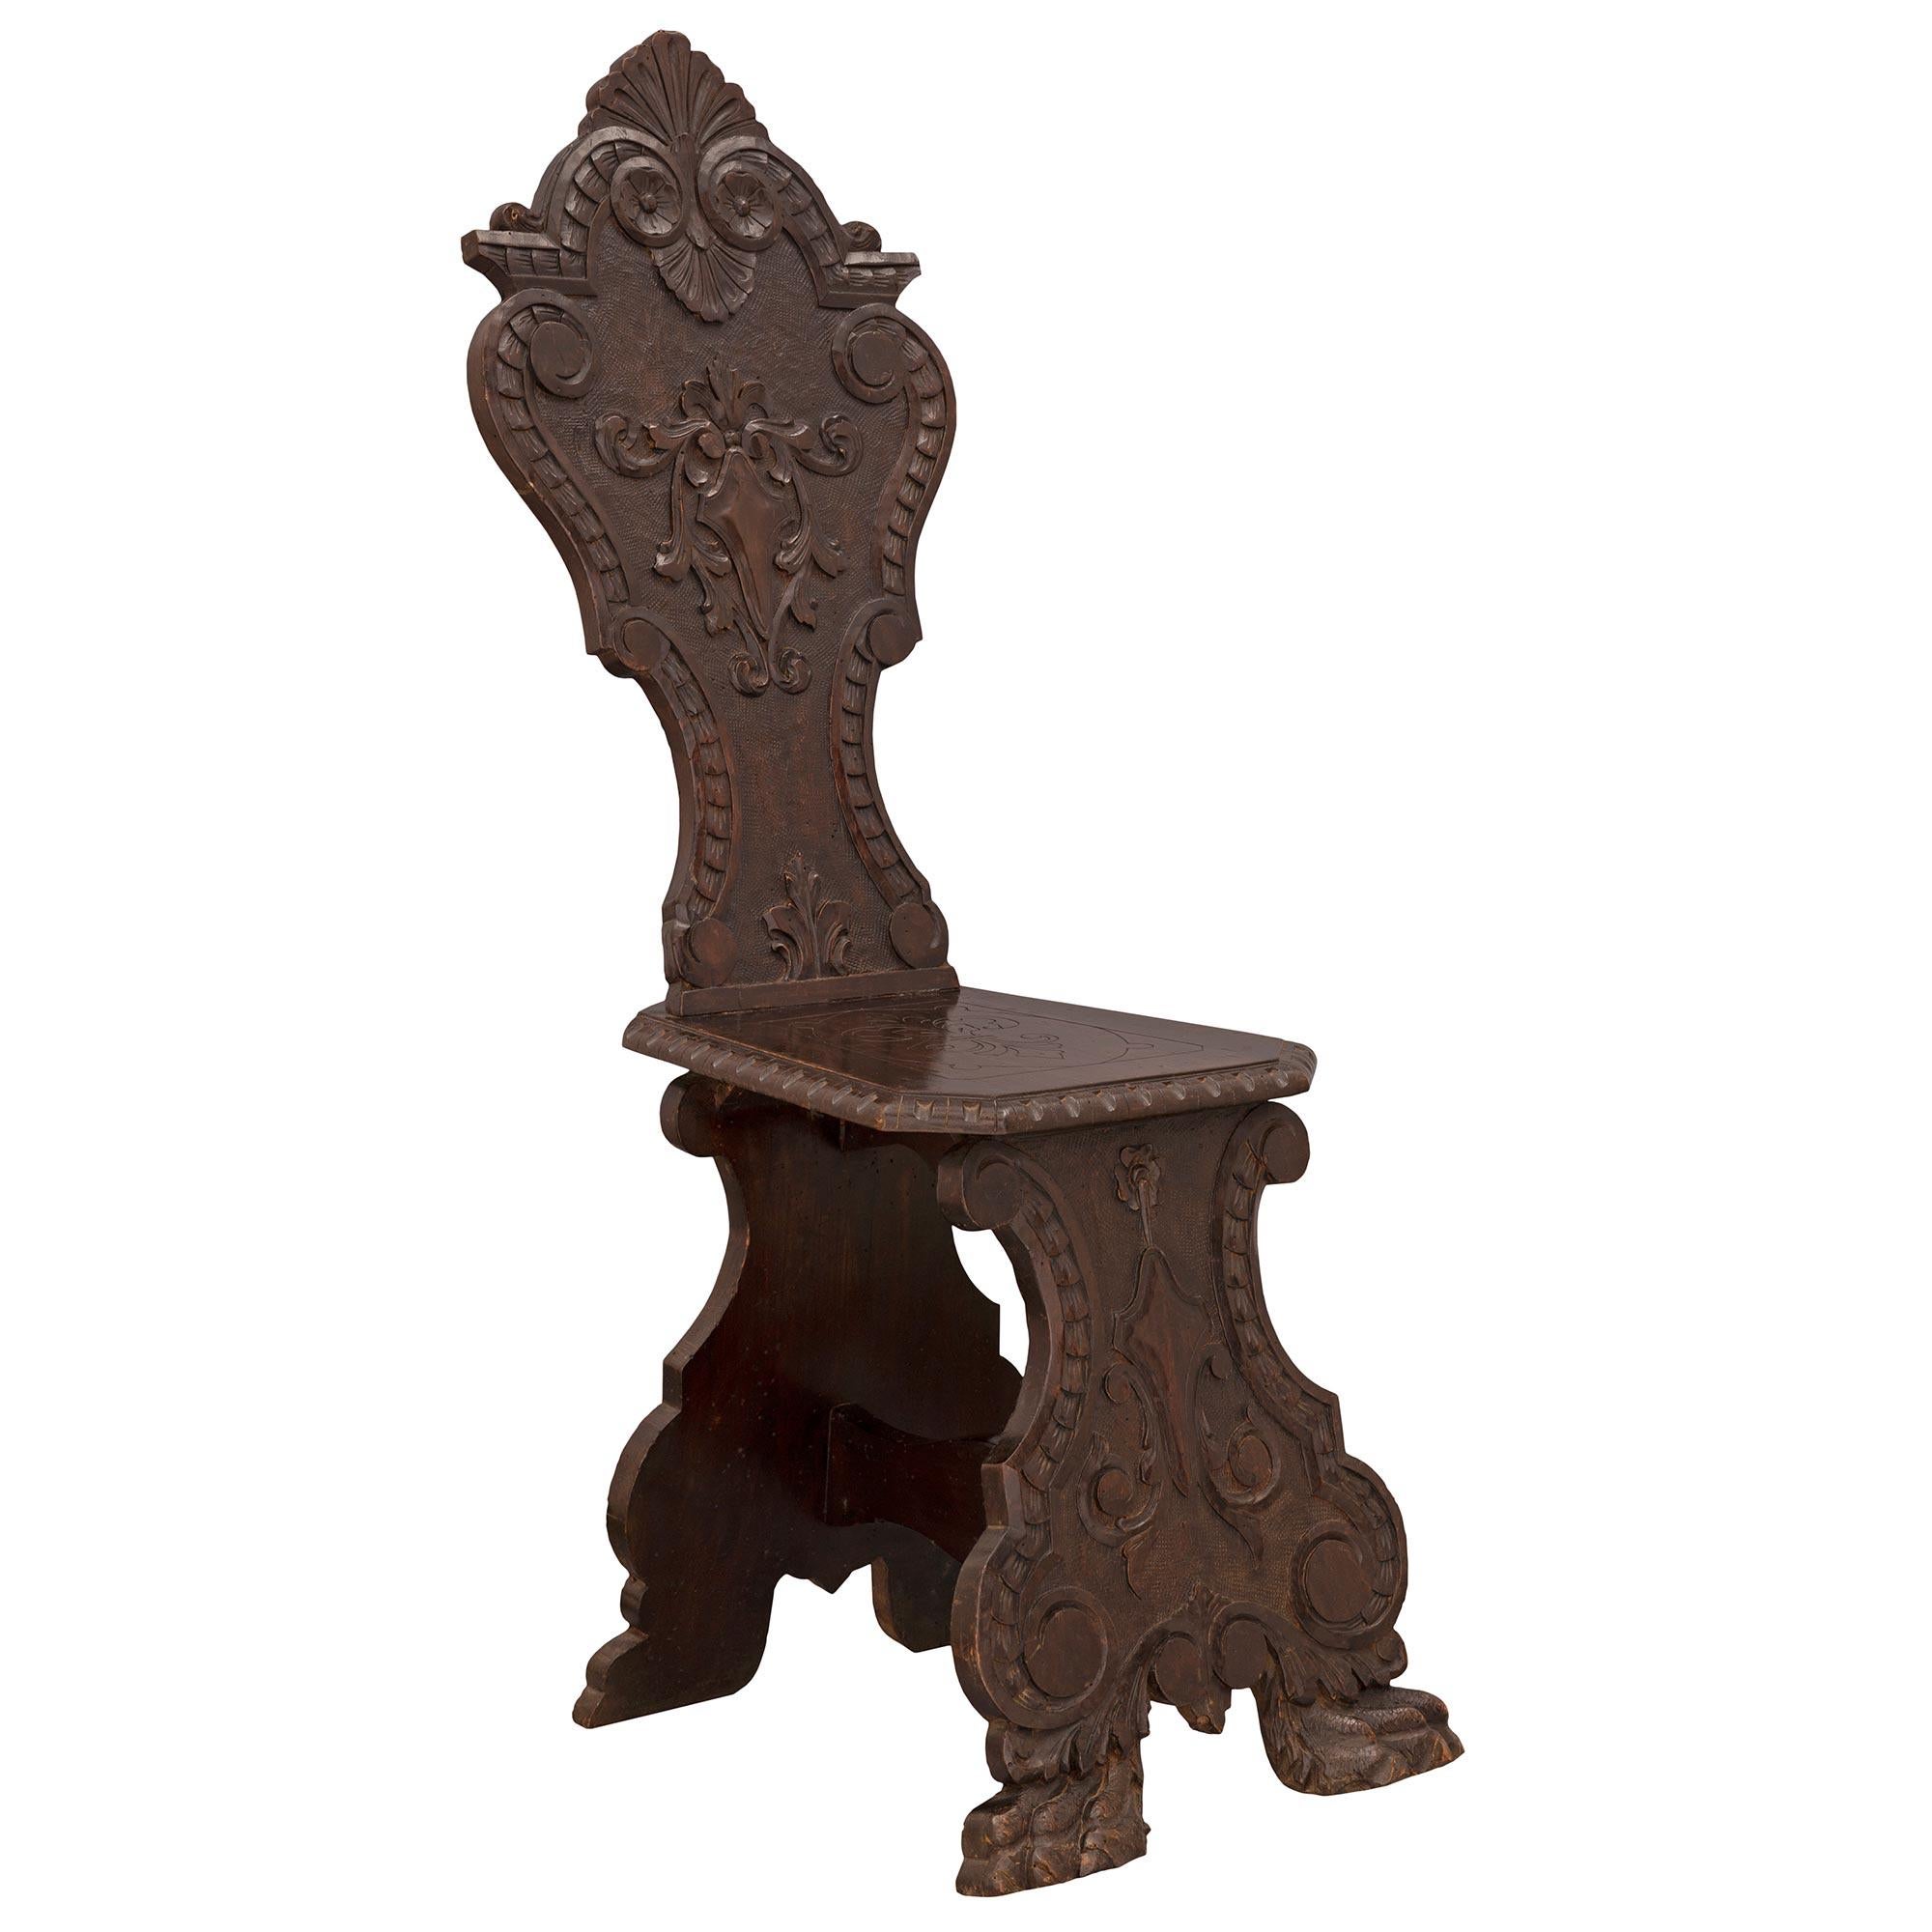 Une belle paire de chaises en noyer de la Renaissance italienne du 19e siècle, très décoratives. Chaque chaise est surélevée par des pieds en patte d'oie richement sculptés sous les élégants supports à volutes décorés de magnifiques motifs